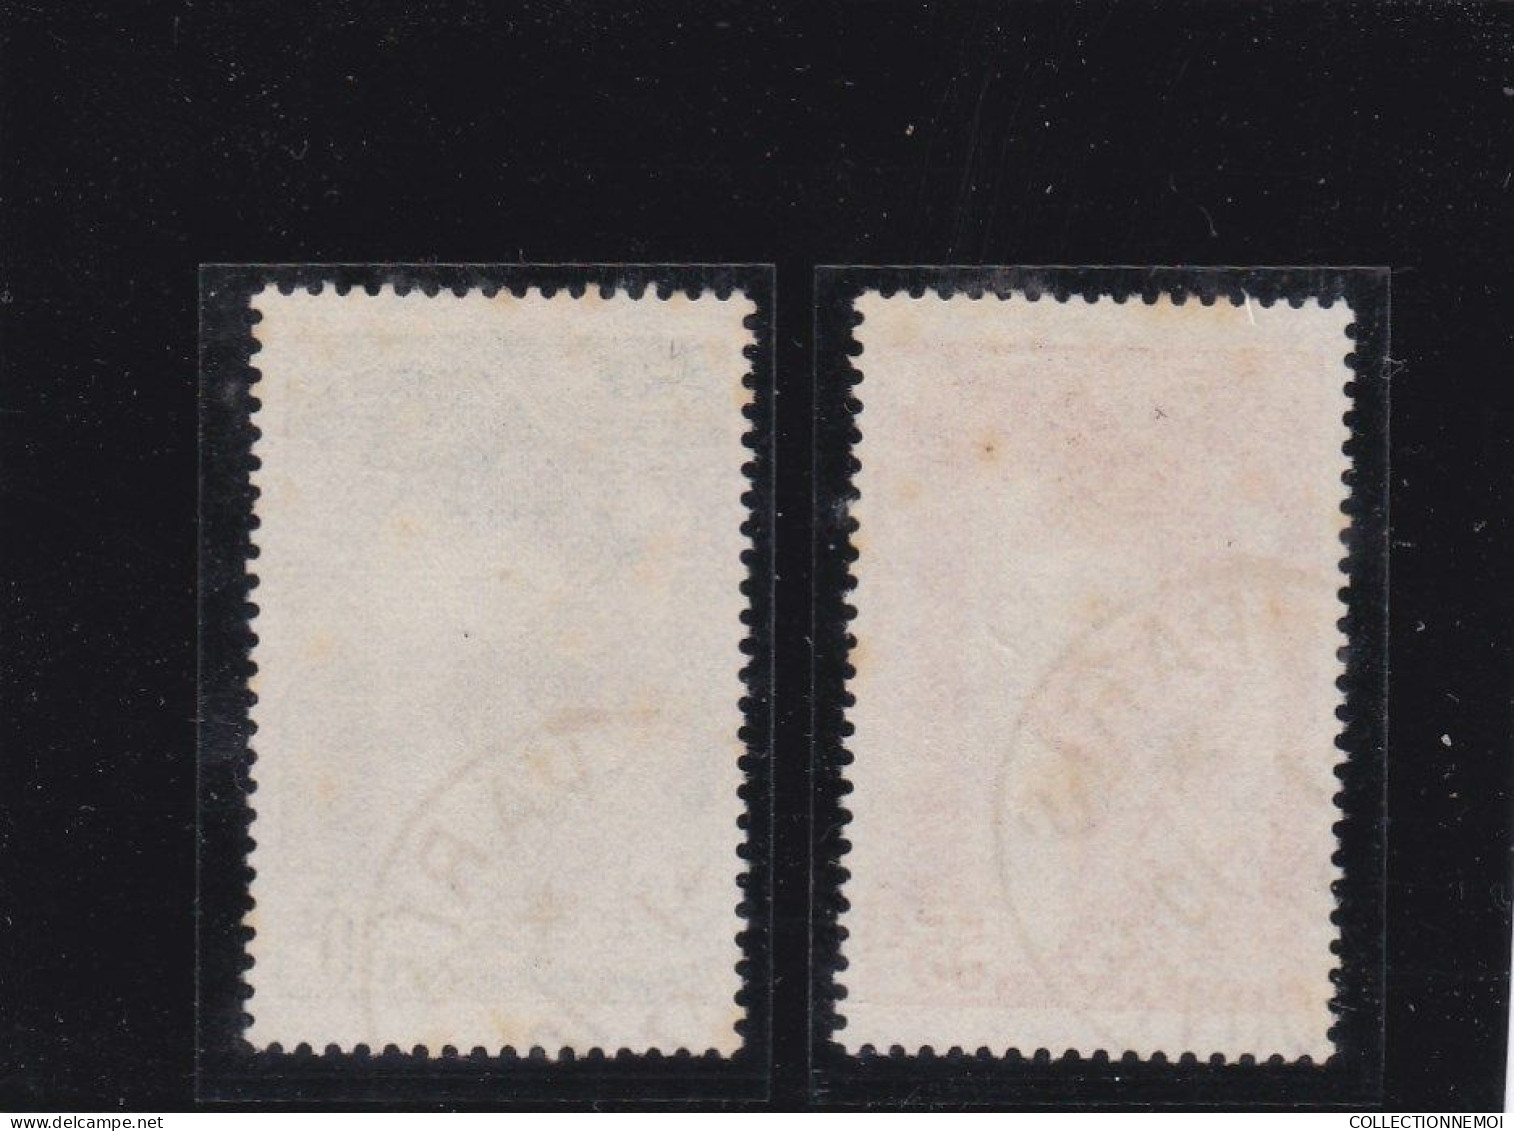 FRANCE ,, ,,1 lot de SAMOTHRACE divers neufs et oblitérés,,,,, 8 timbres en tout